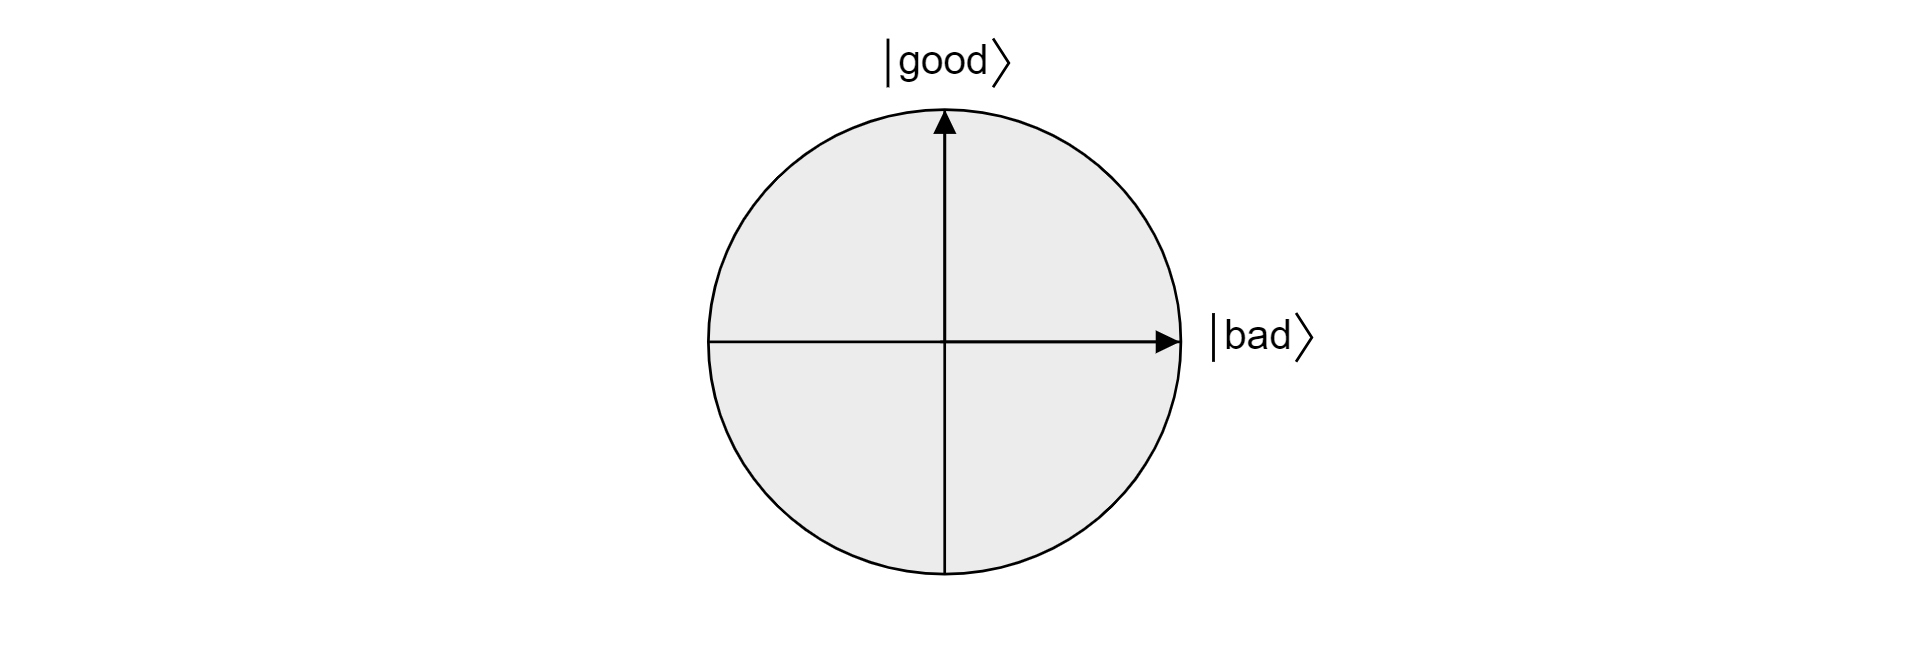 Bloch 球体中由正交好向量和坏向量投影的平面图。